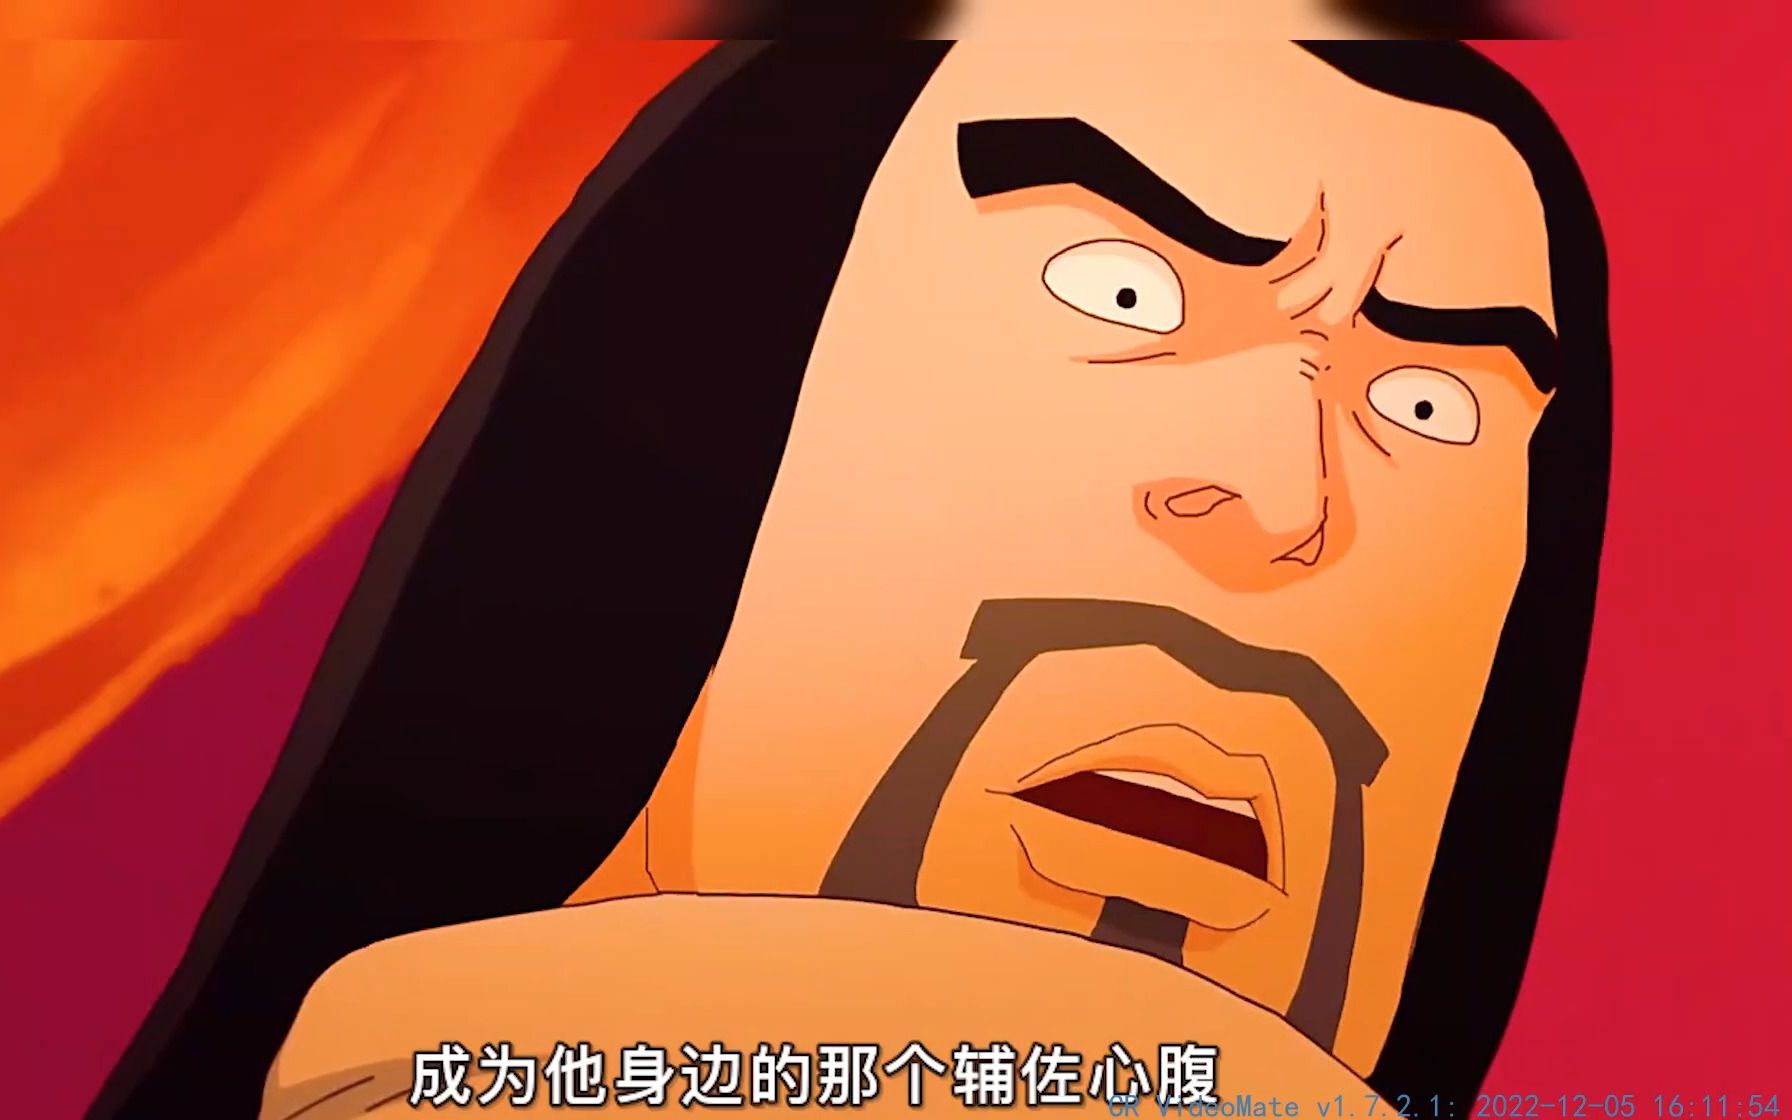 中国首部暗黑动画，据说百分之99的人都不敢看完，一个暗黑系动画，揭开丑陋人心！